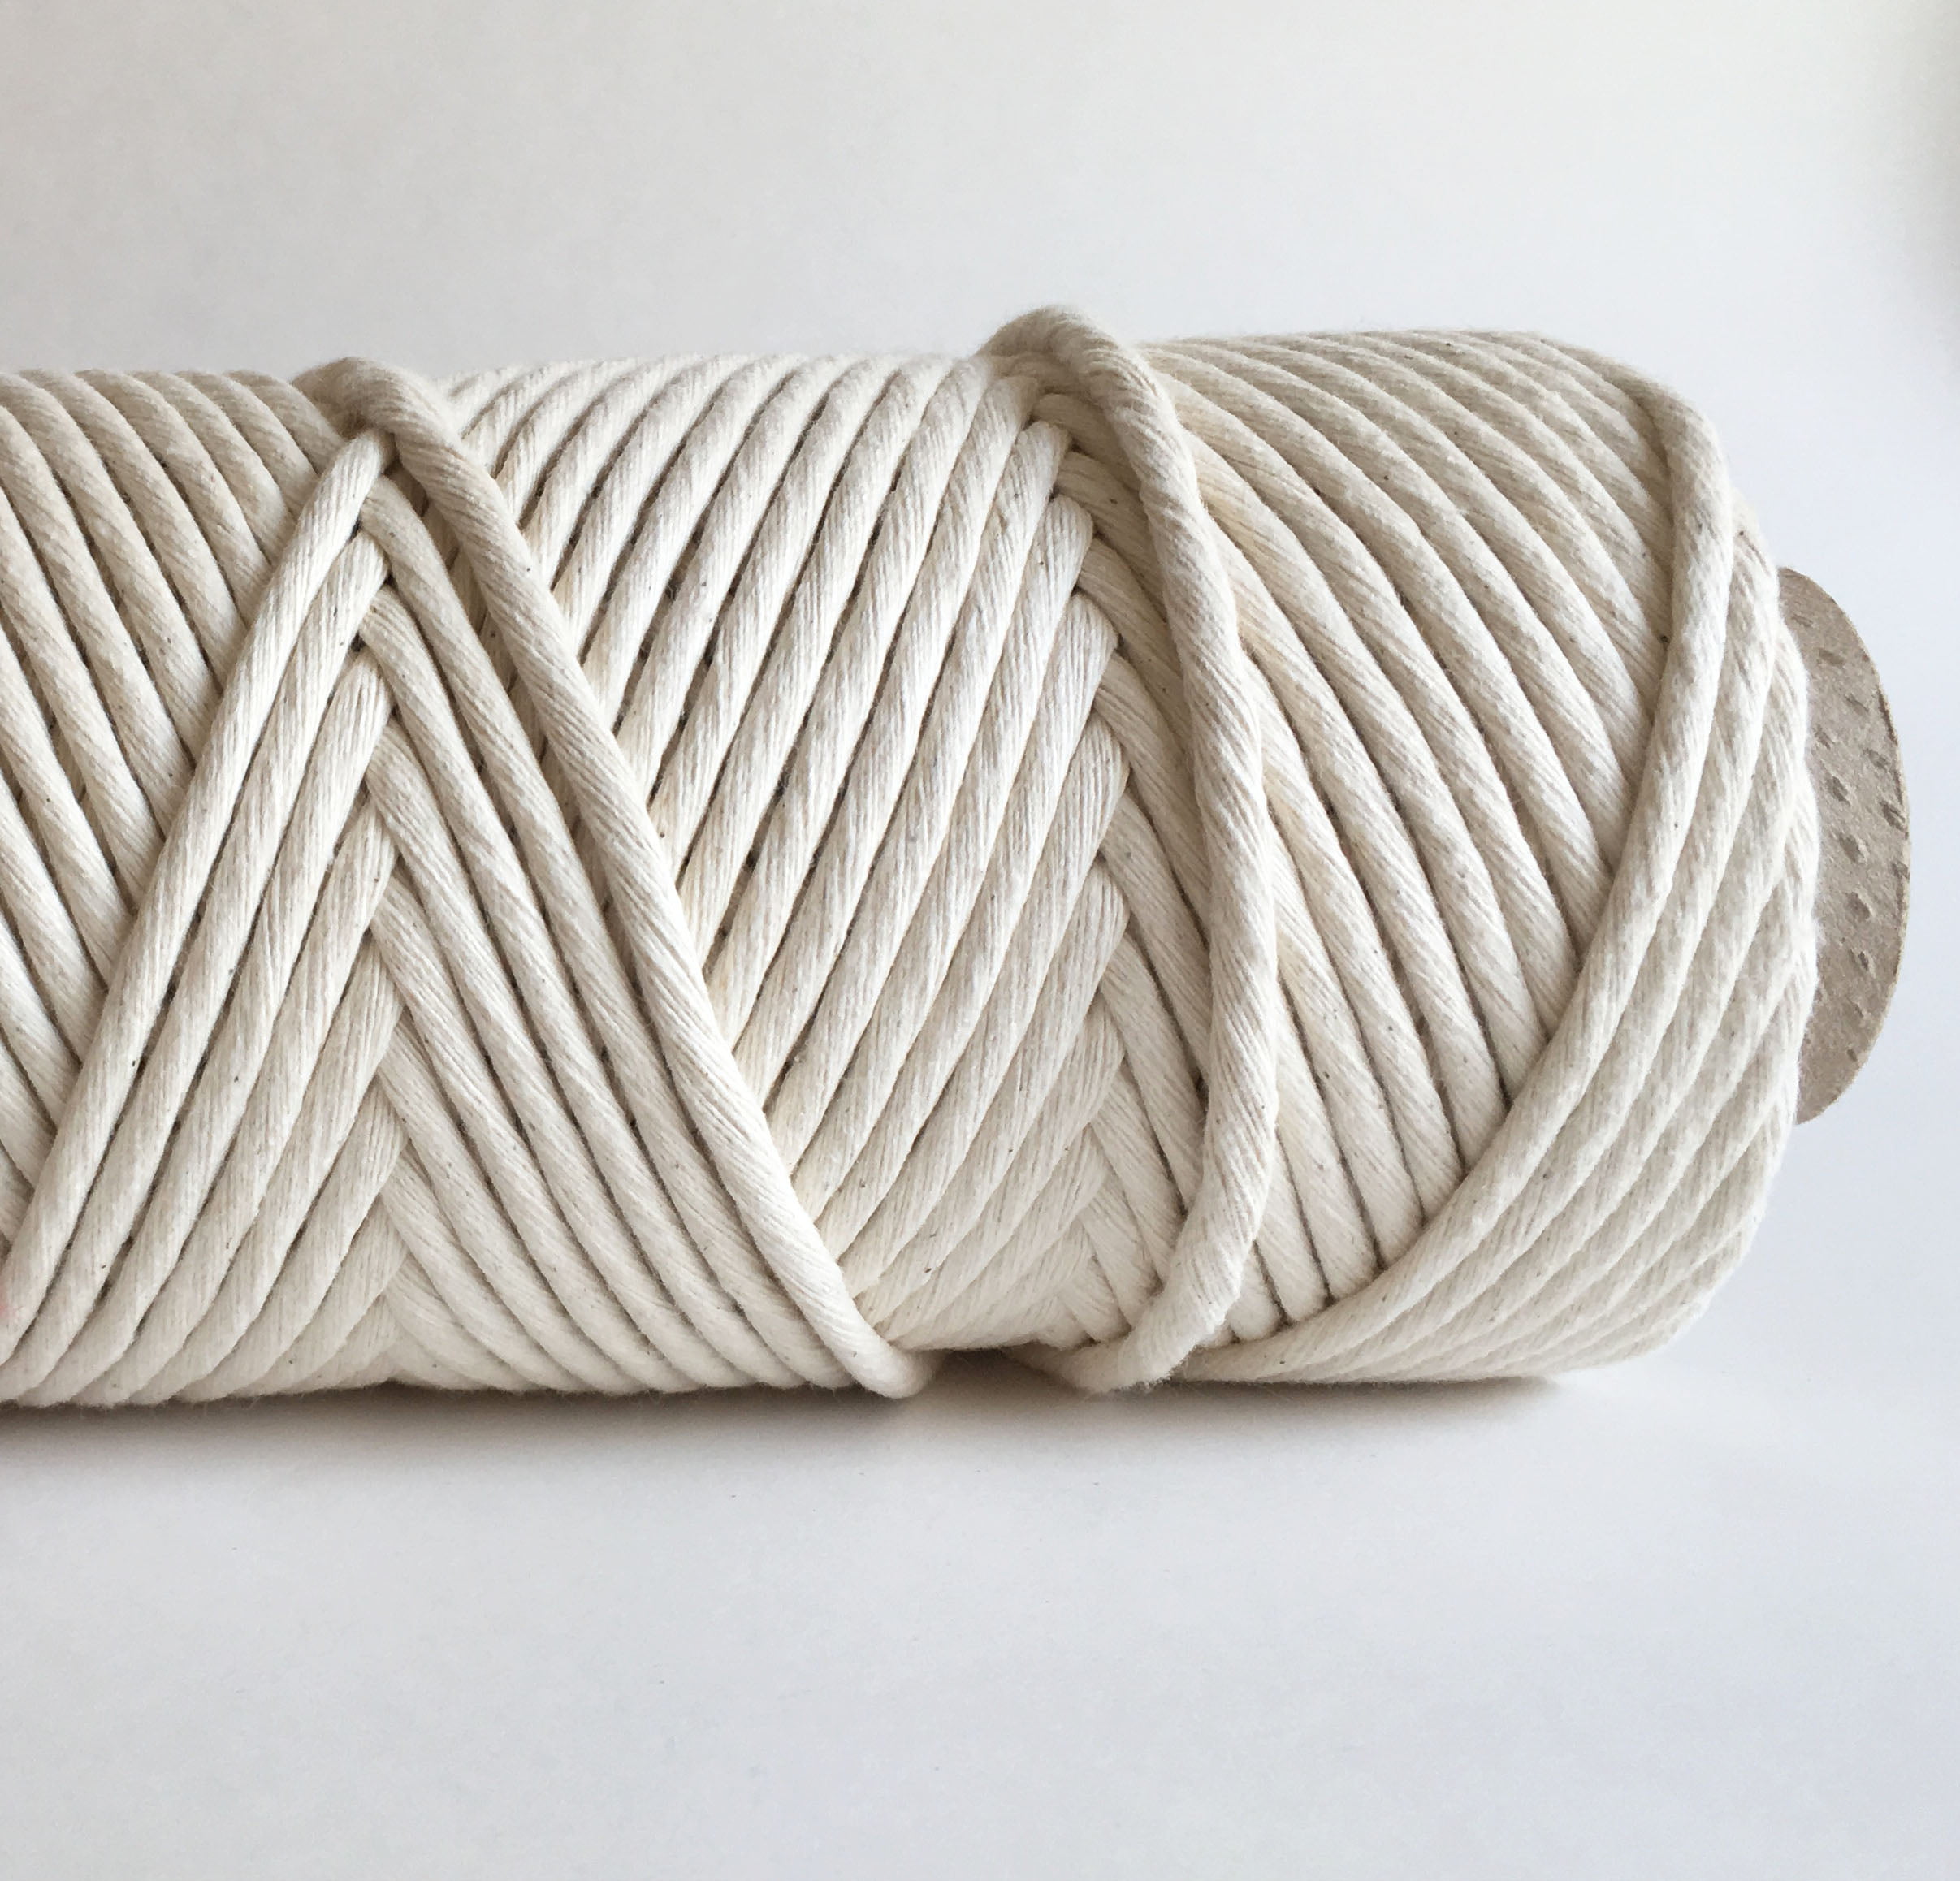 Soft Cotton Cords - Zero Waste - Single Strand 6 mm 8 mm